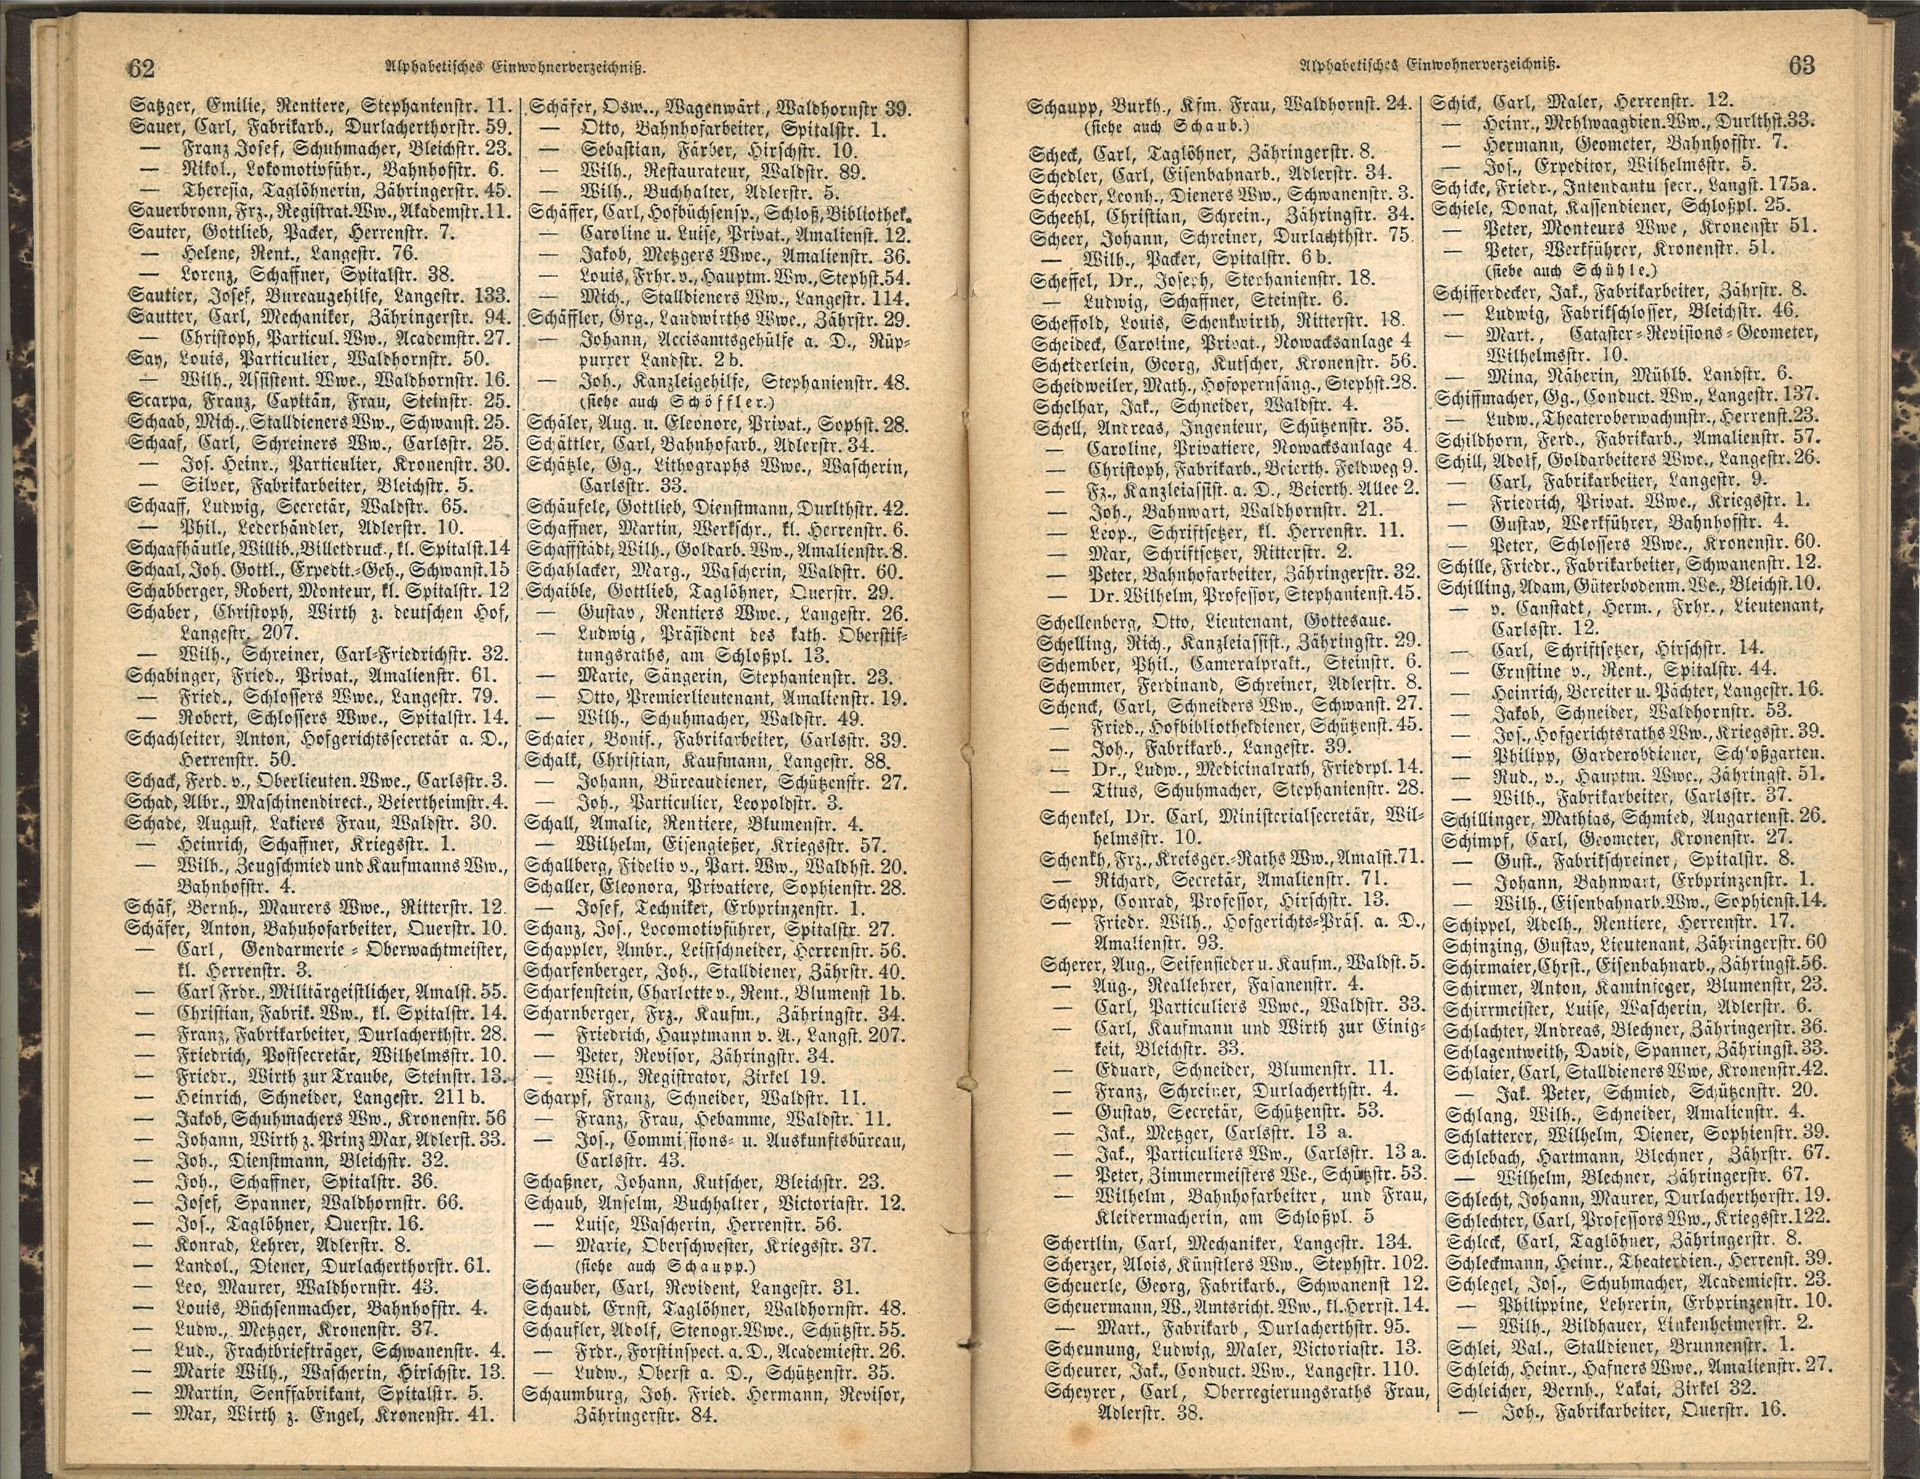 Adressbuch der Stadt Karlsruhe von 1872, mit alphabetischem Einwohnerverzeichnis. - Bild 3 aus 3